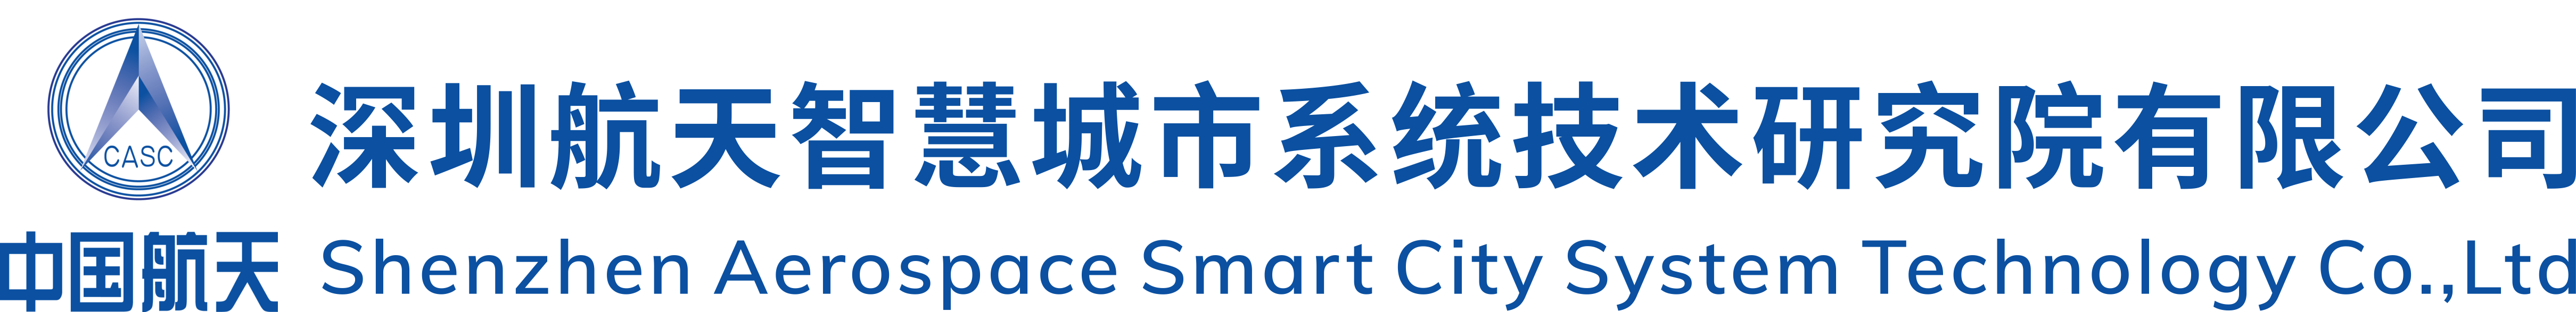 深圳航天智慧城市系统技术研究院有限公司